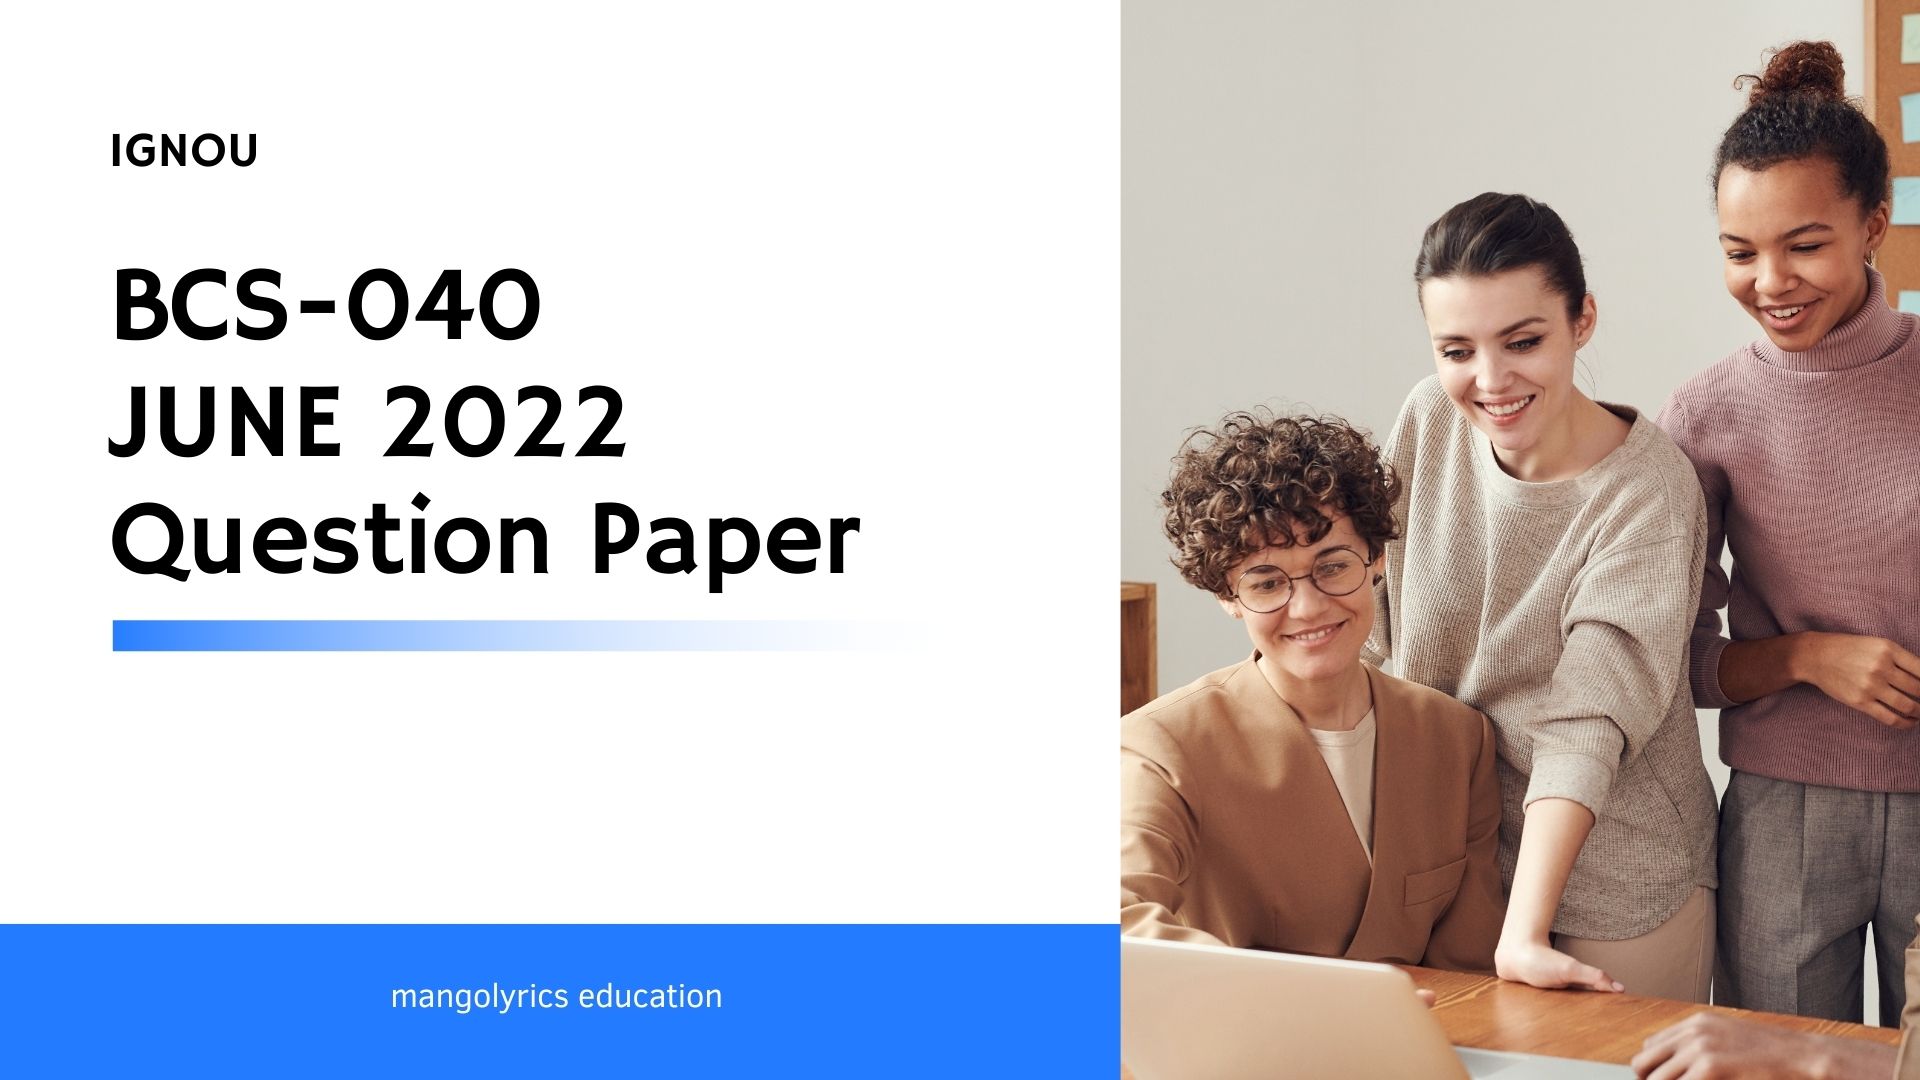 IGNOU BCS-040 JUNE 2022 Question Paper